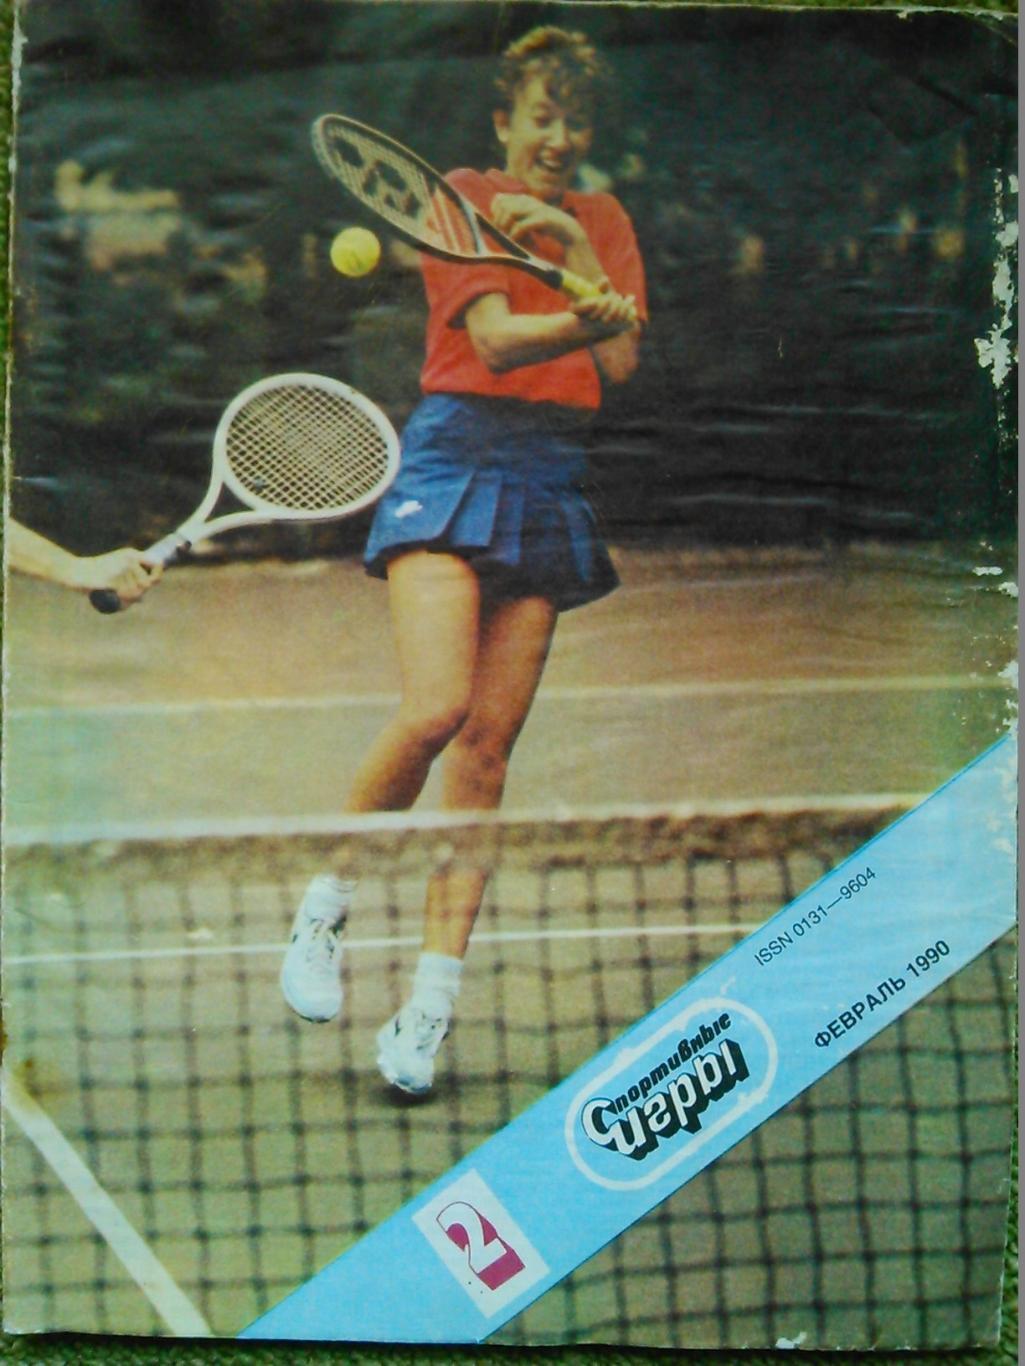 Спортивные игры № 2.1990г.-спецвыпуск о теннисе. постер. Оптом скидки до 50%!